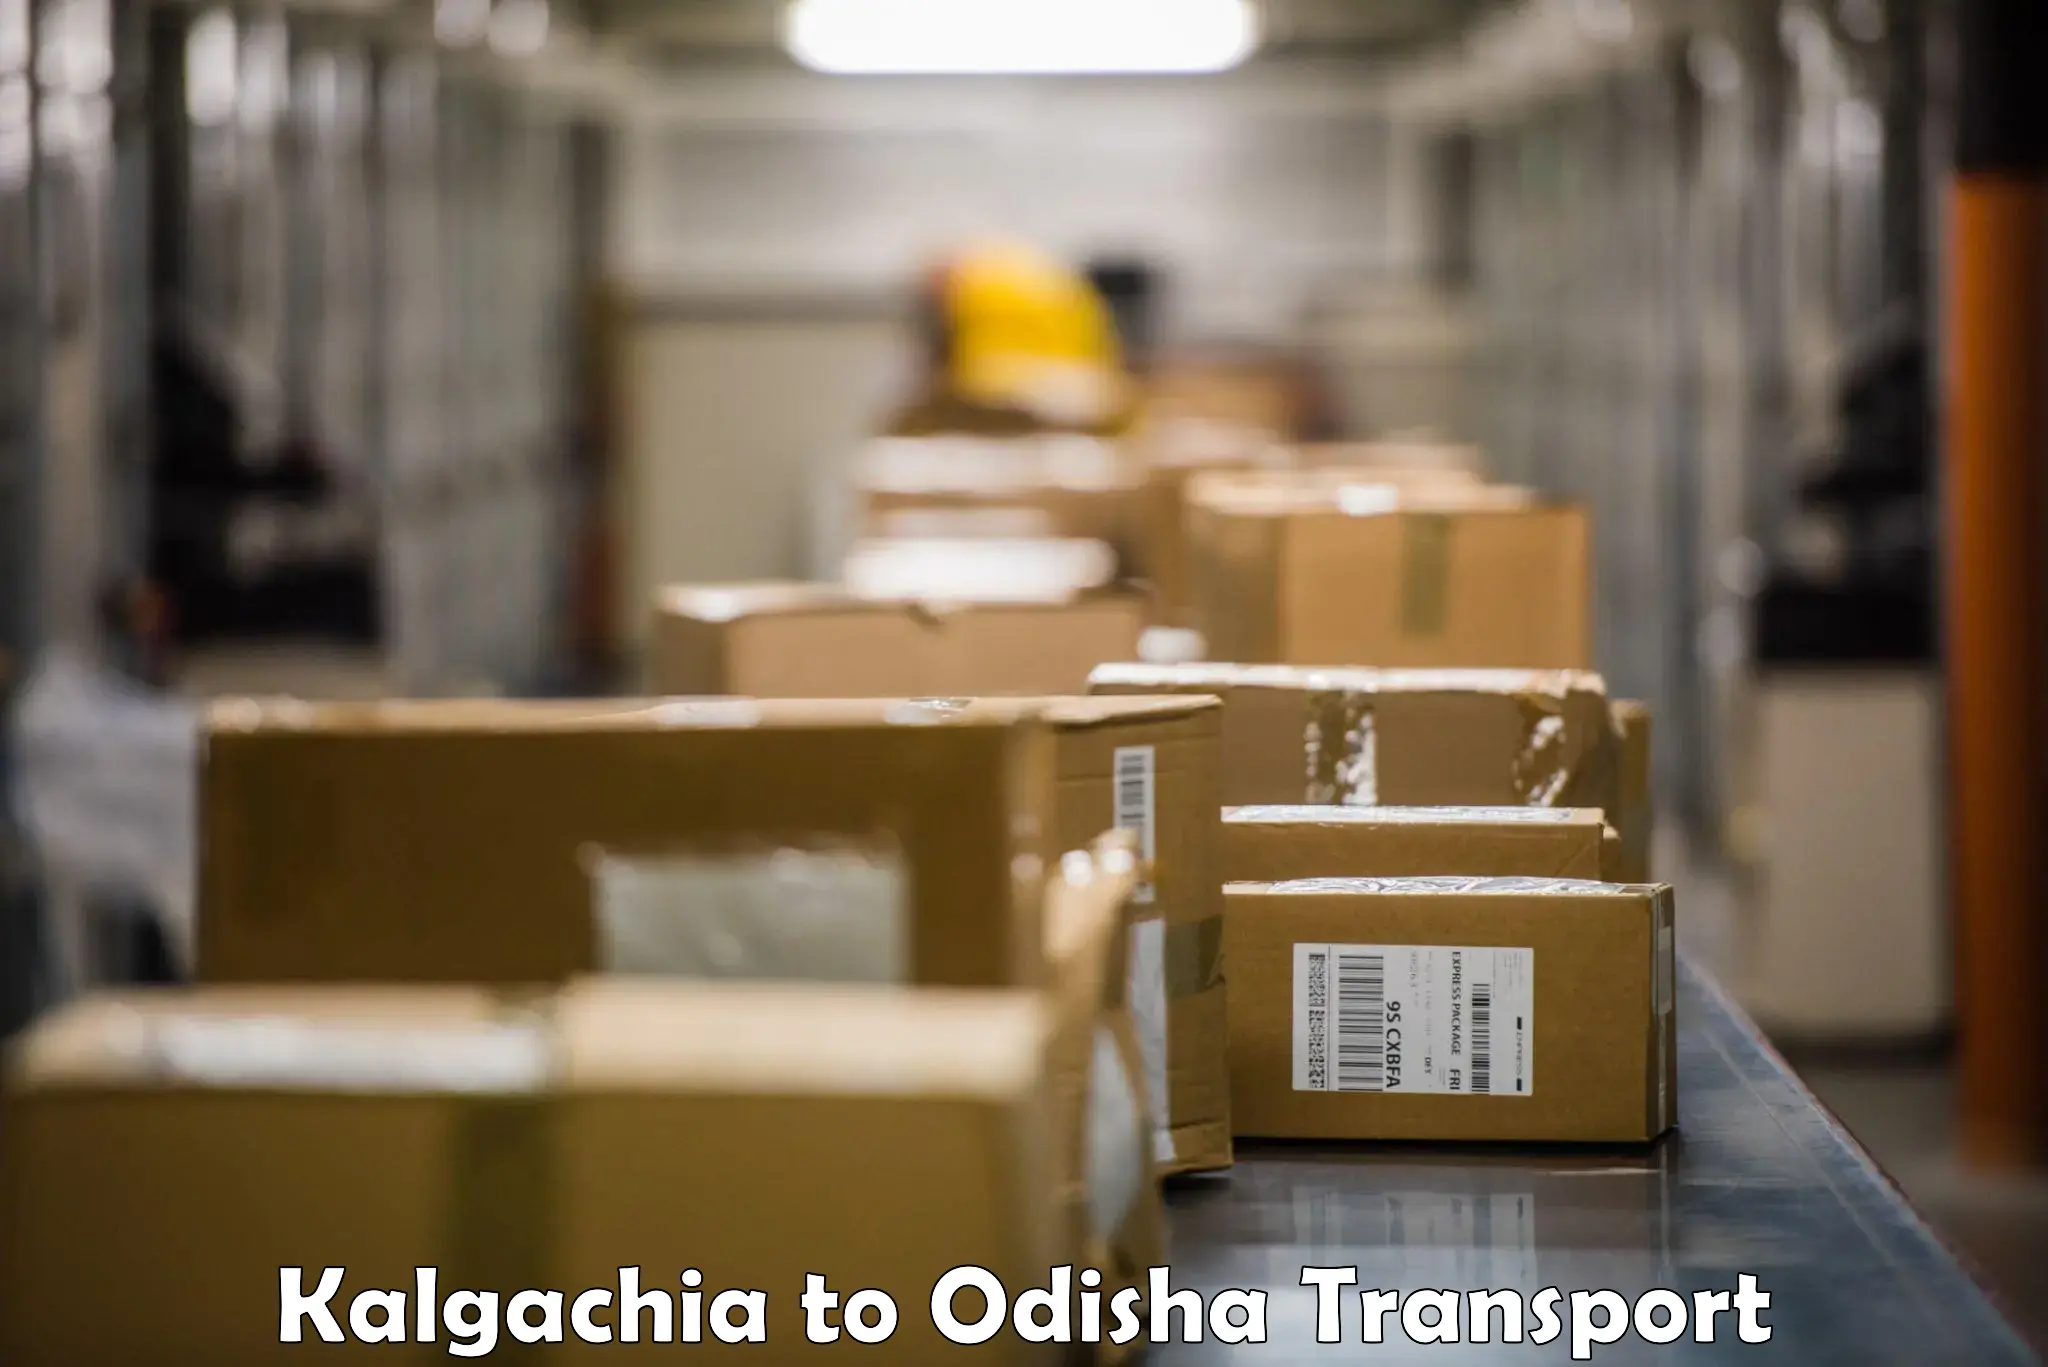 Air freight transport services Kalgachia to Melchhamunda